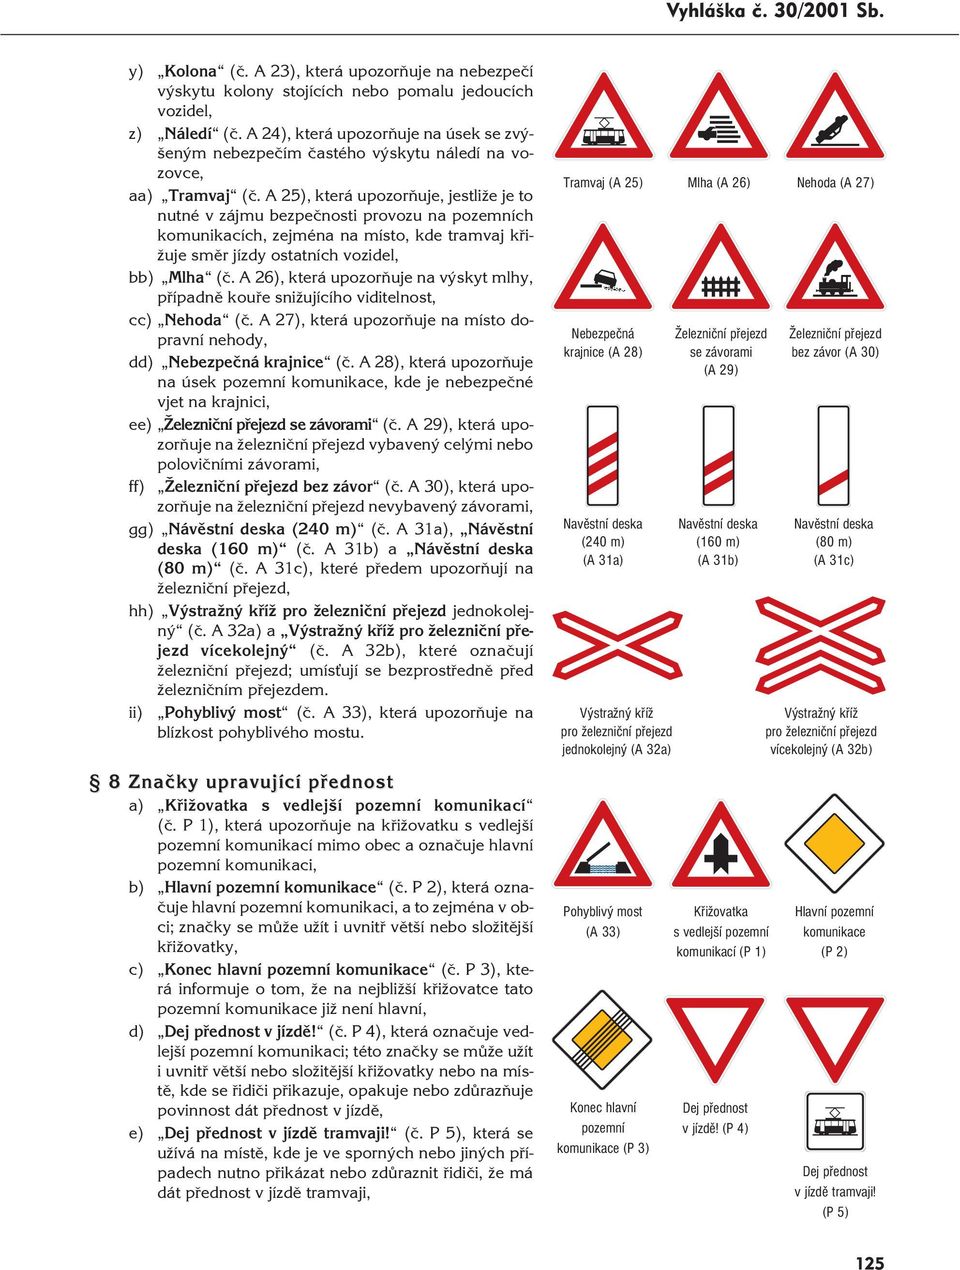 A 25), která upozorňuje, jestliže je to nutné v zájmu bezpečnosti provozu na pozemních komunikacích, zejména na místo, kde tramvaj křižuje směr jízdy ostatních vozidel, bb) Mlha (č.